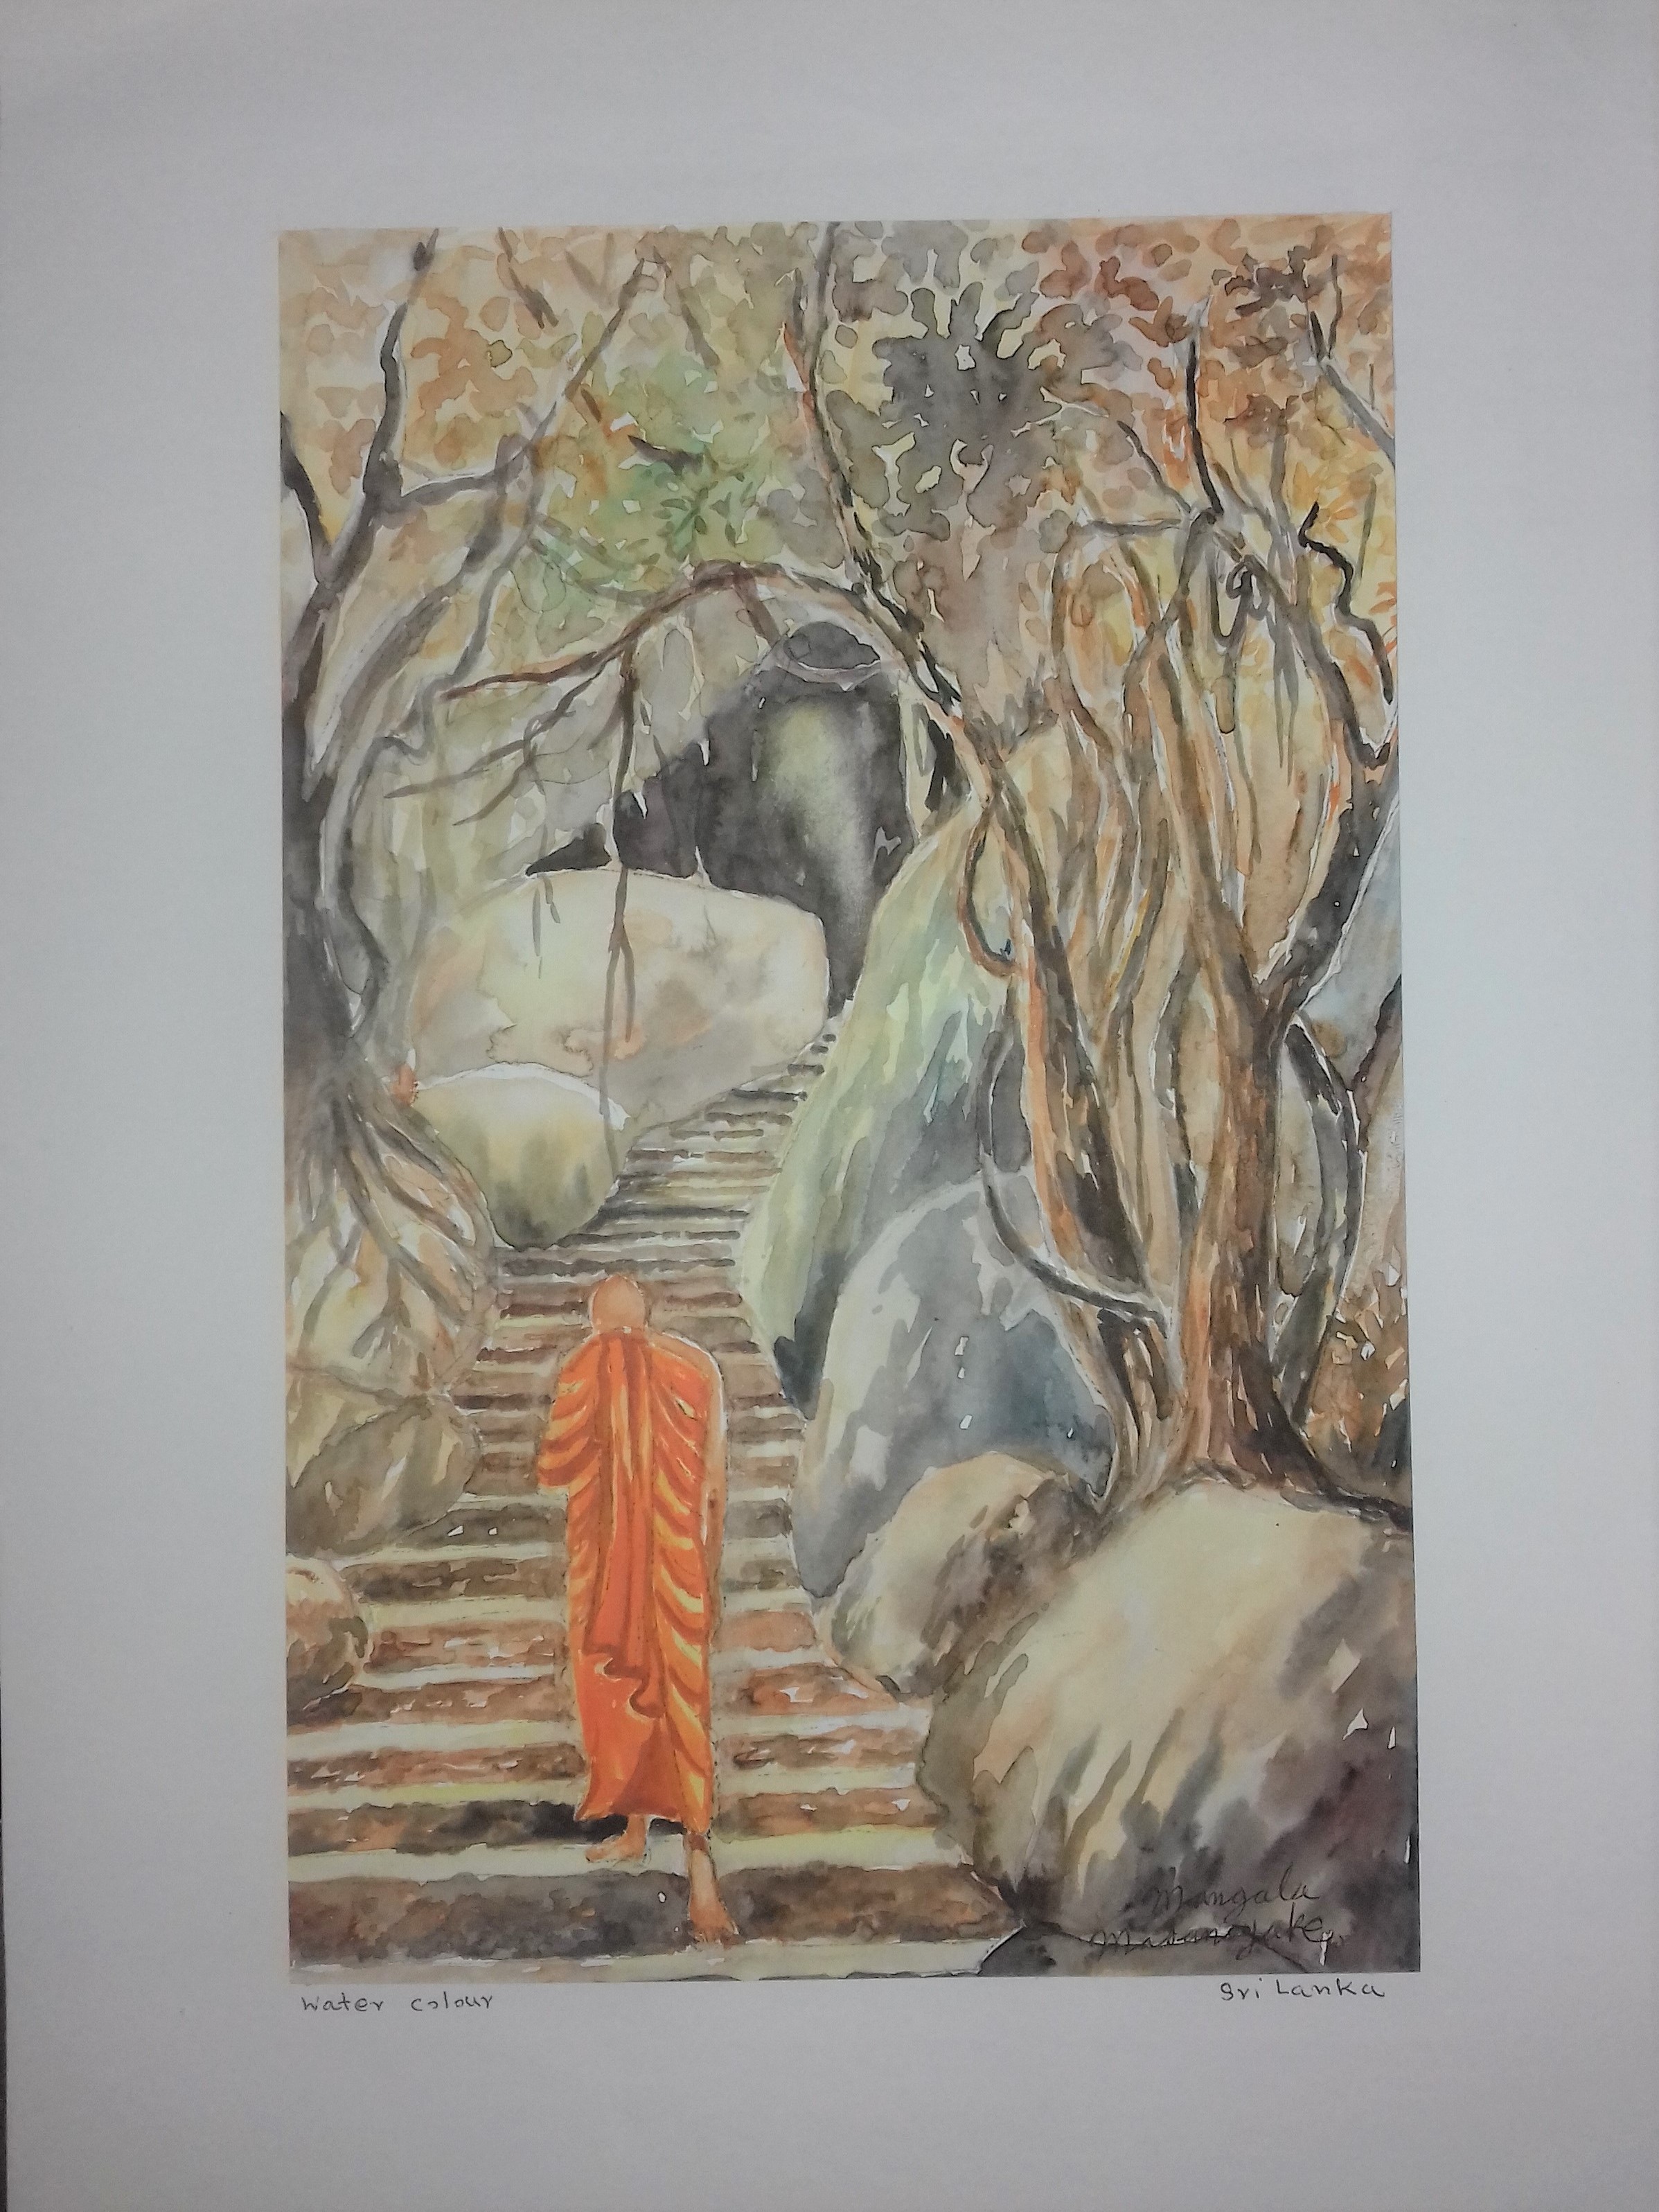 Monk by Mangala Madanayake